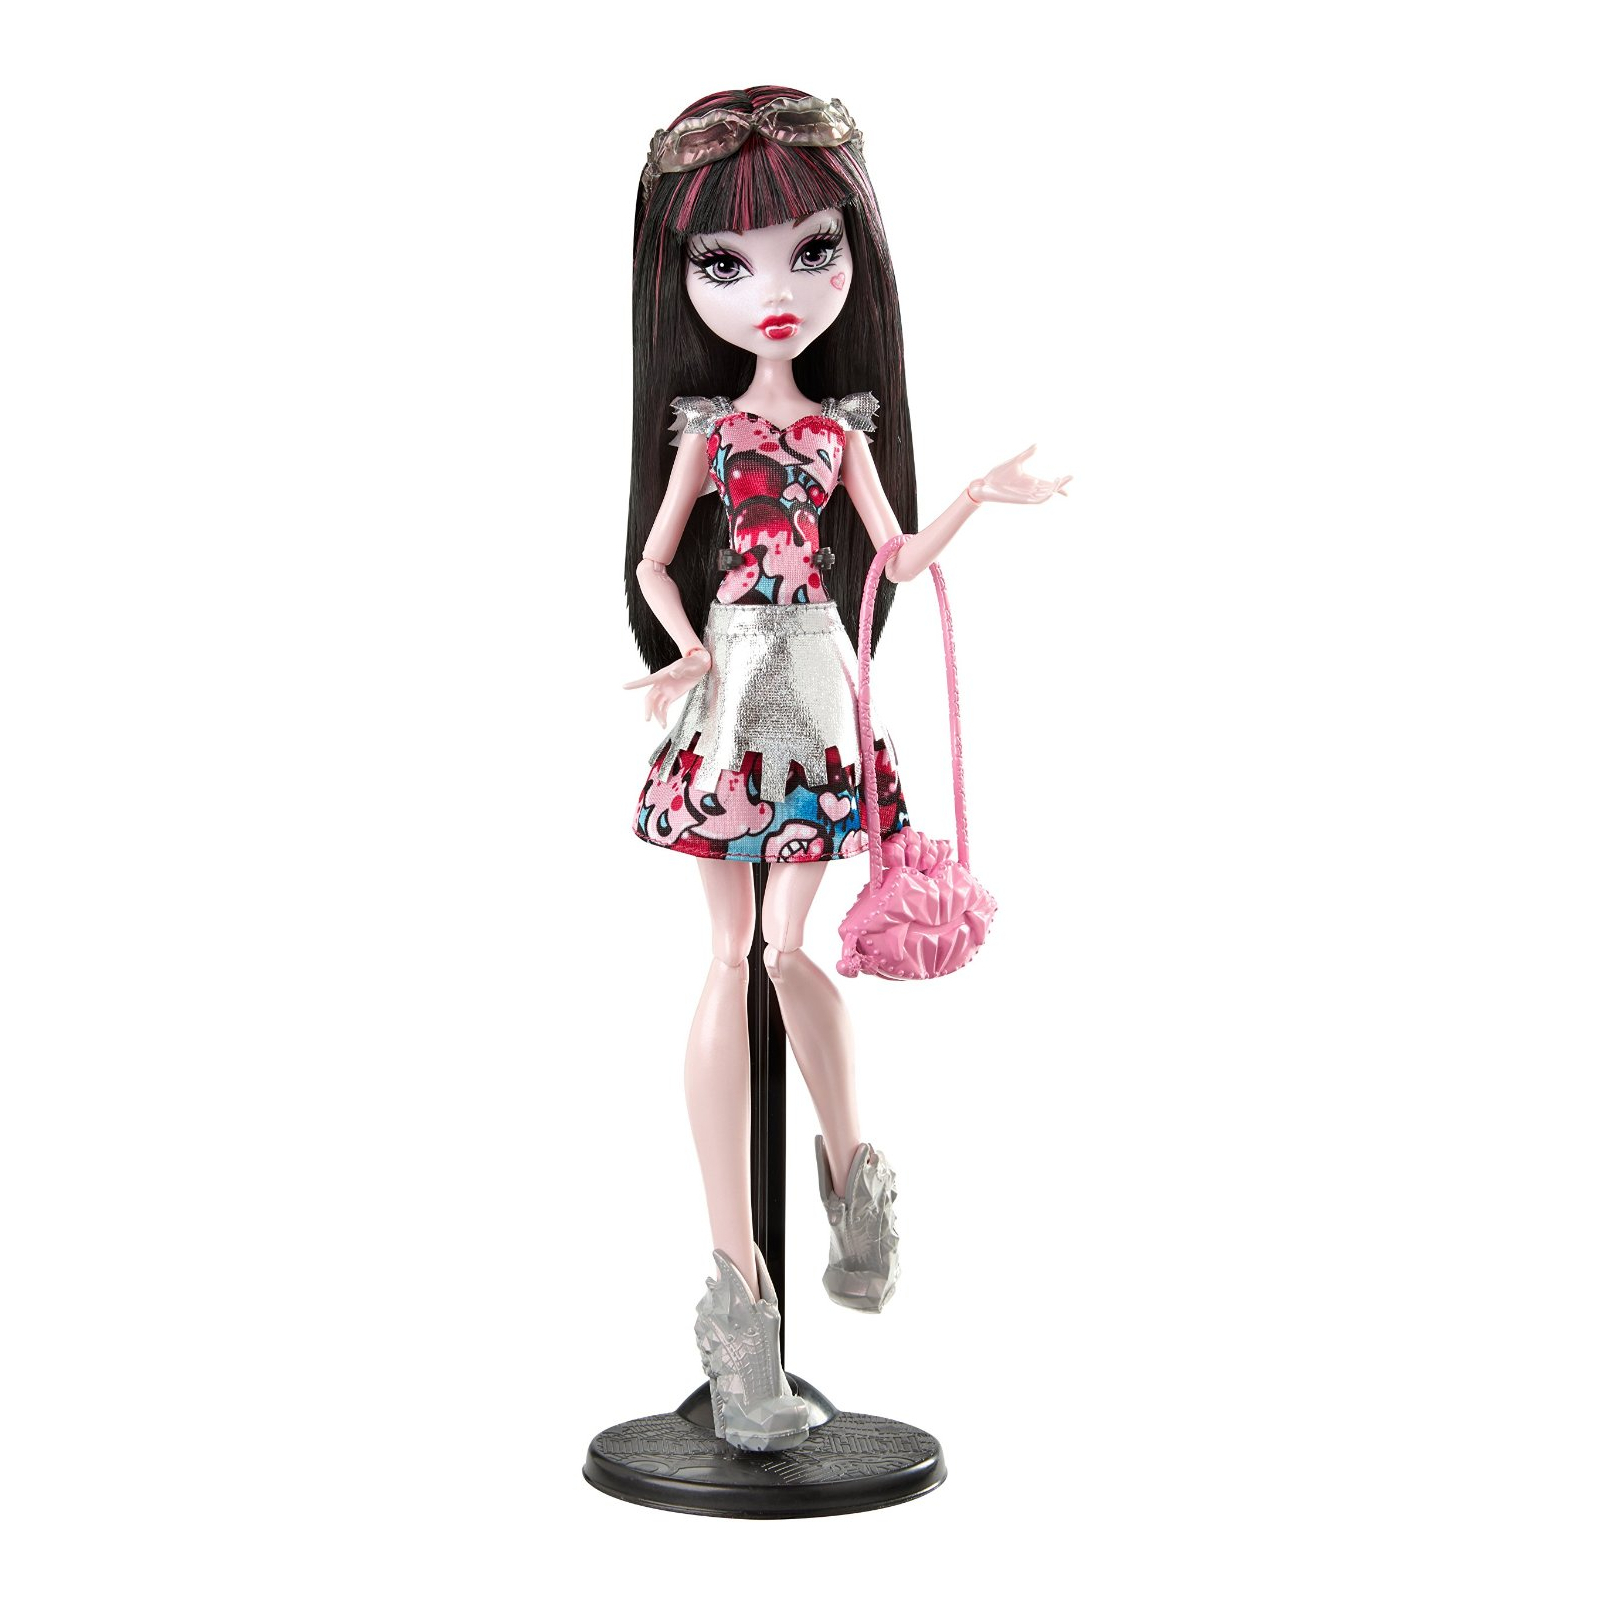 Кукла Monster High Дракулора серии Монстуристы из м/ф Буу-Йорк (CHW57-2)